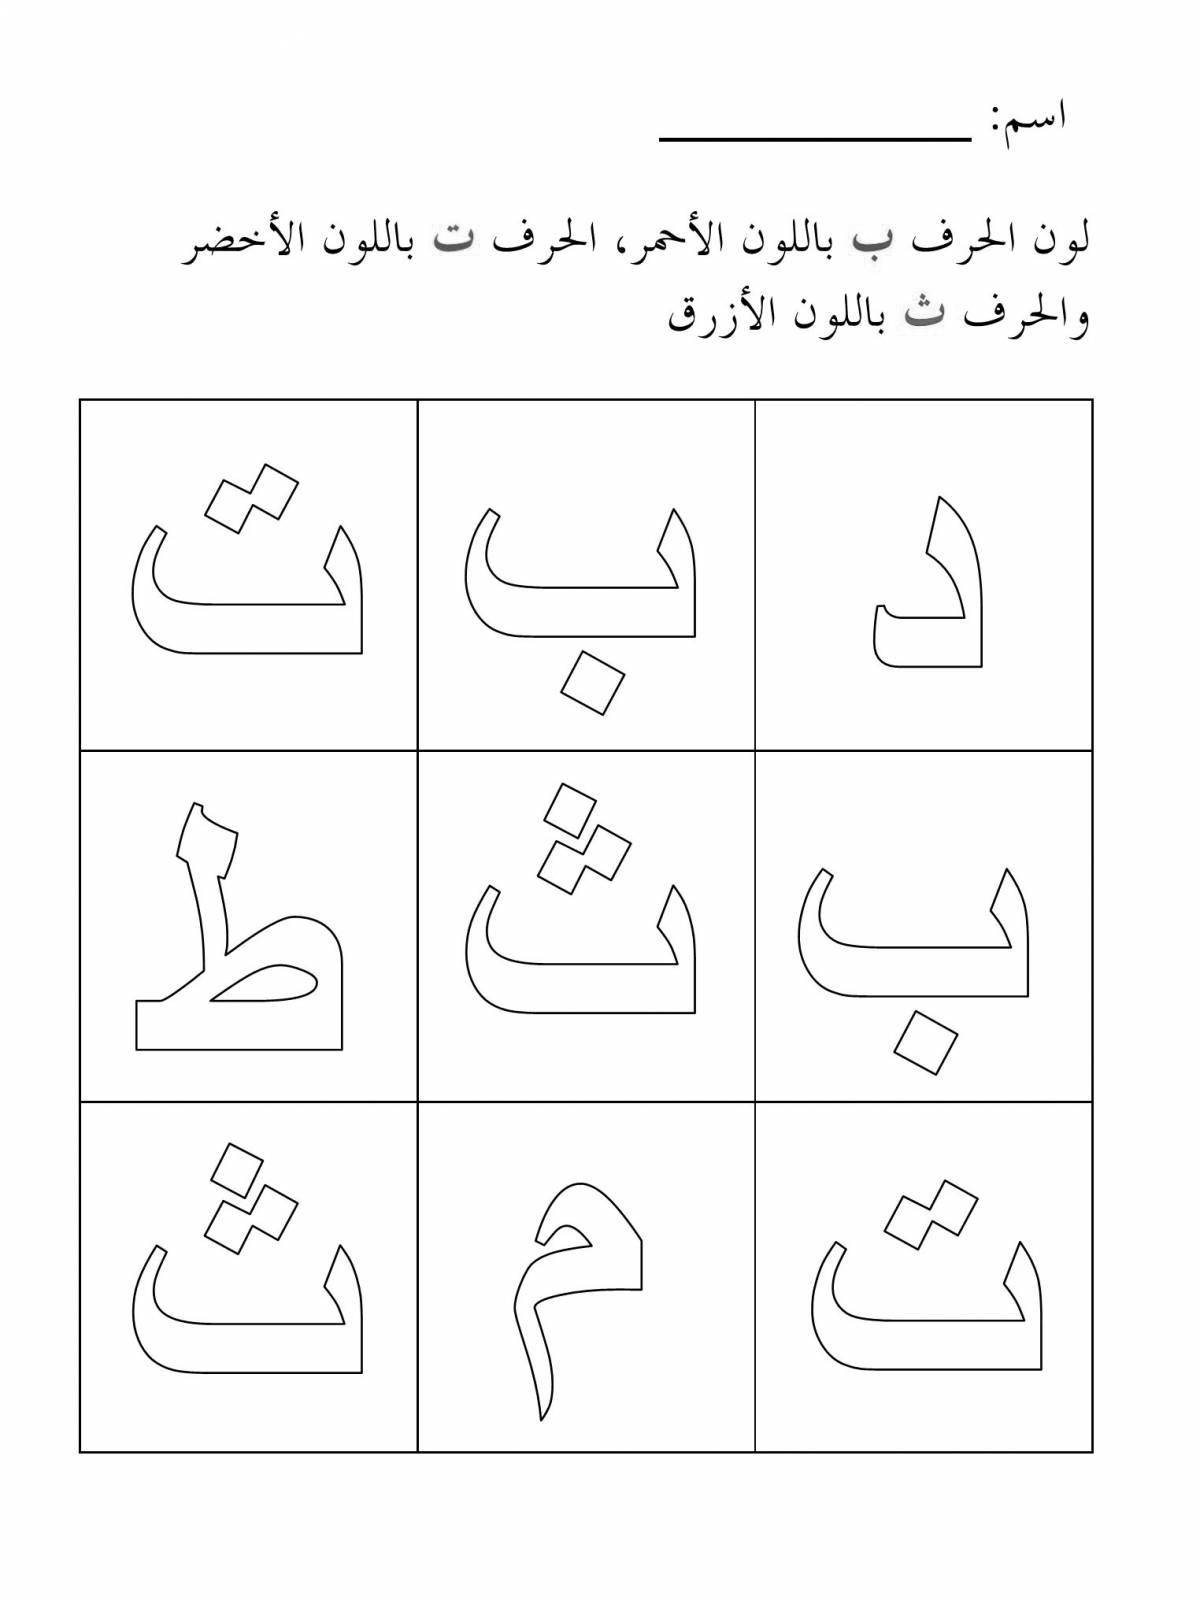 Joyful coloring in Arabic letters